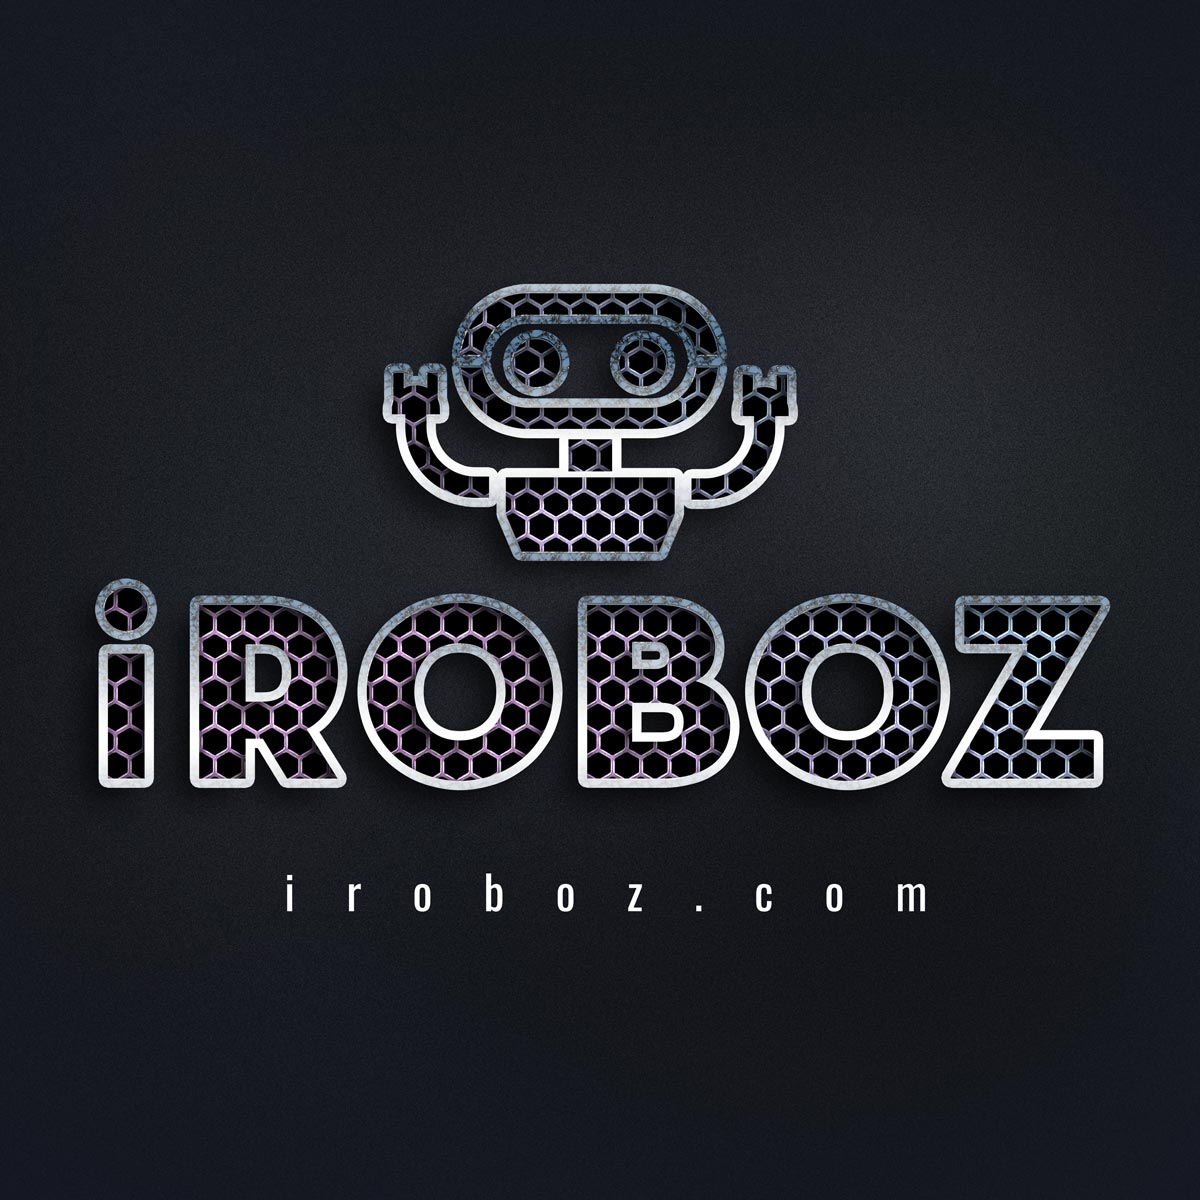 iRoboz logo - Robot Startup Brand name - iroboz.com